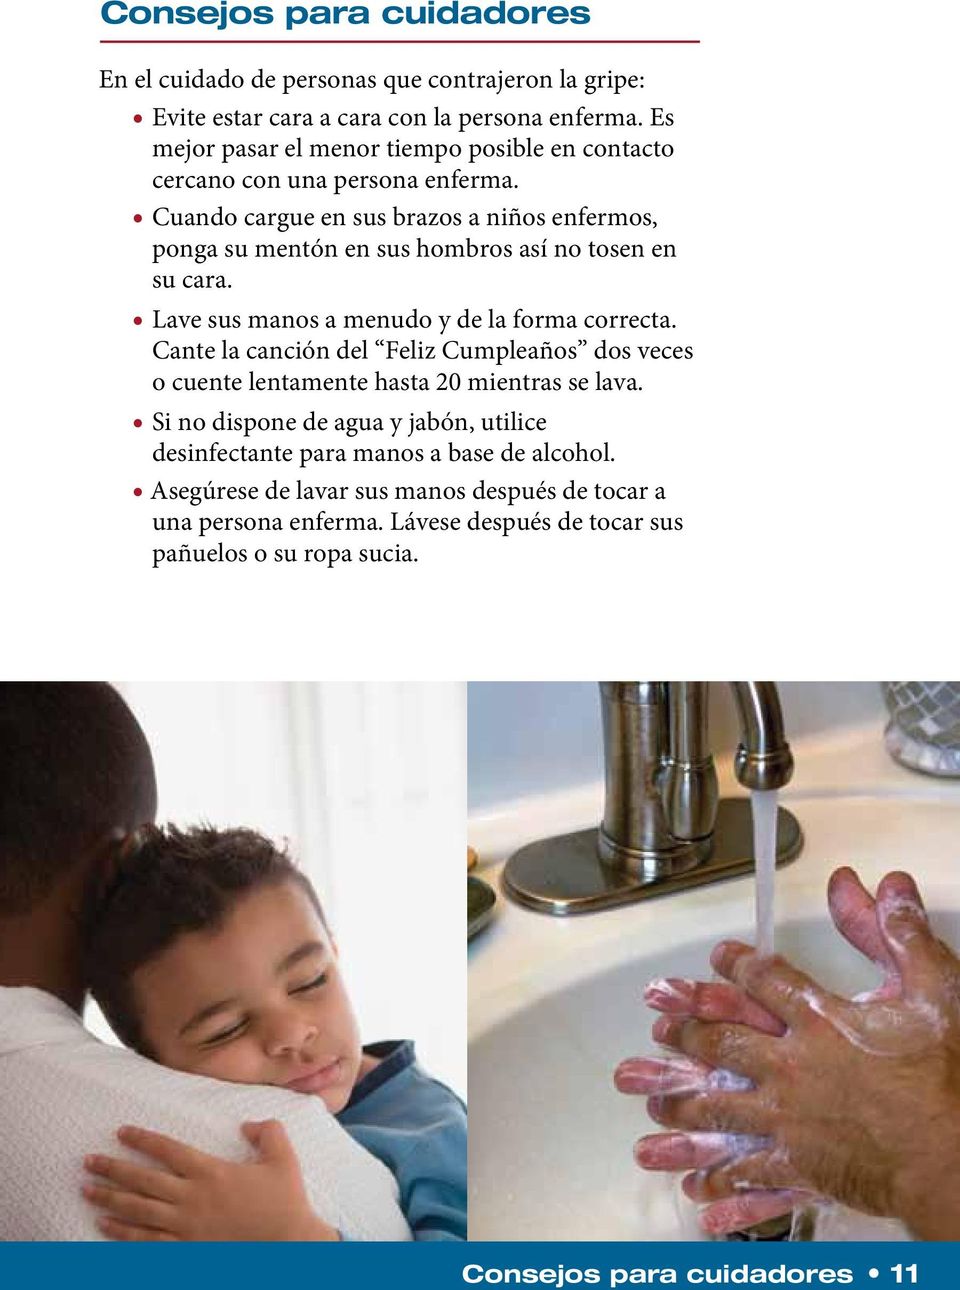 Cuando cargue en sus brazos a niños enfermos, ponga su mentón en sus hombros así no tosen en su cara. Lave sus manos a menudo y de la forma correcta.